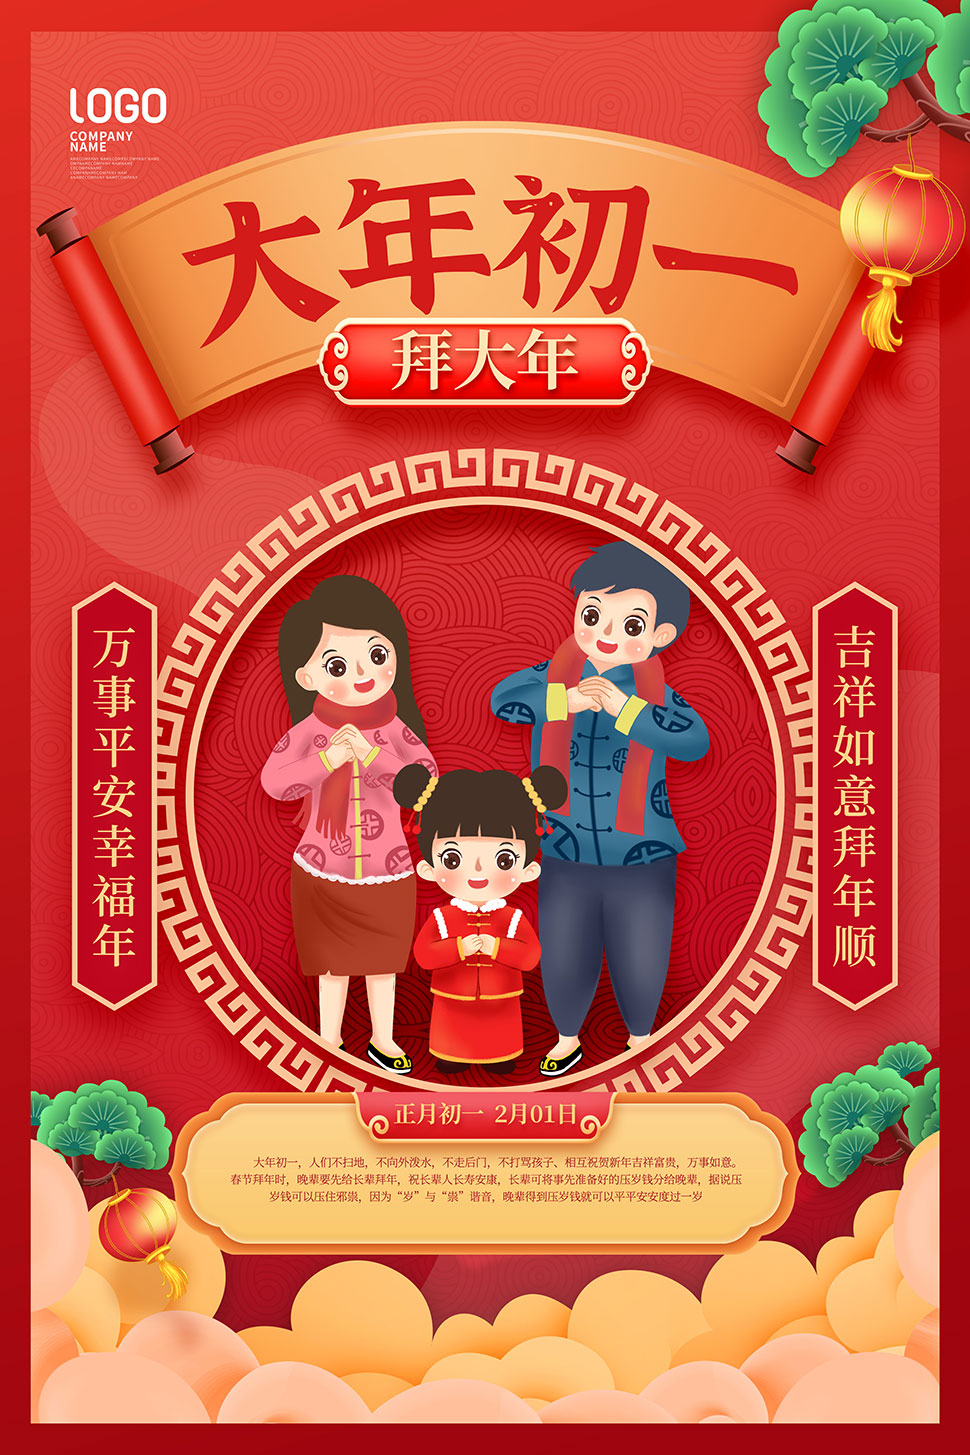 中国传统春节习俗宣传海报psd素材